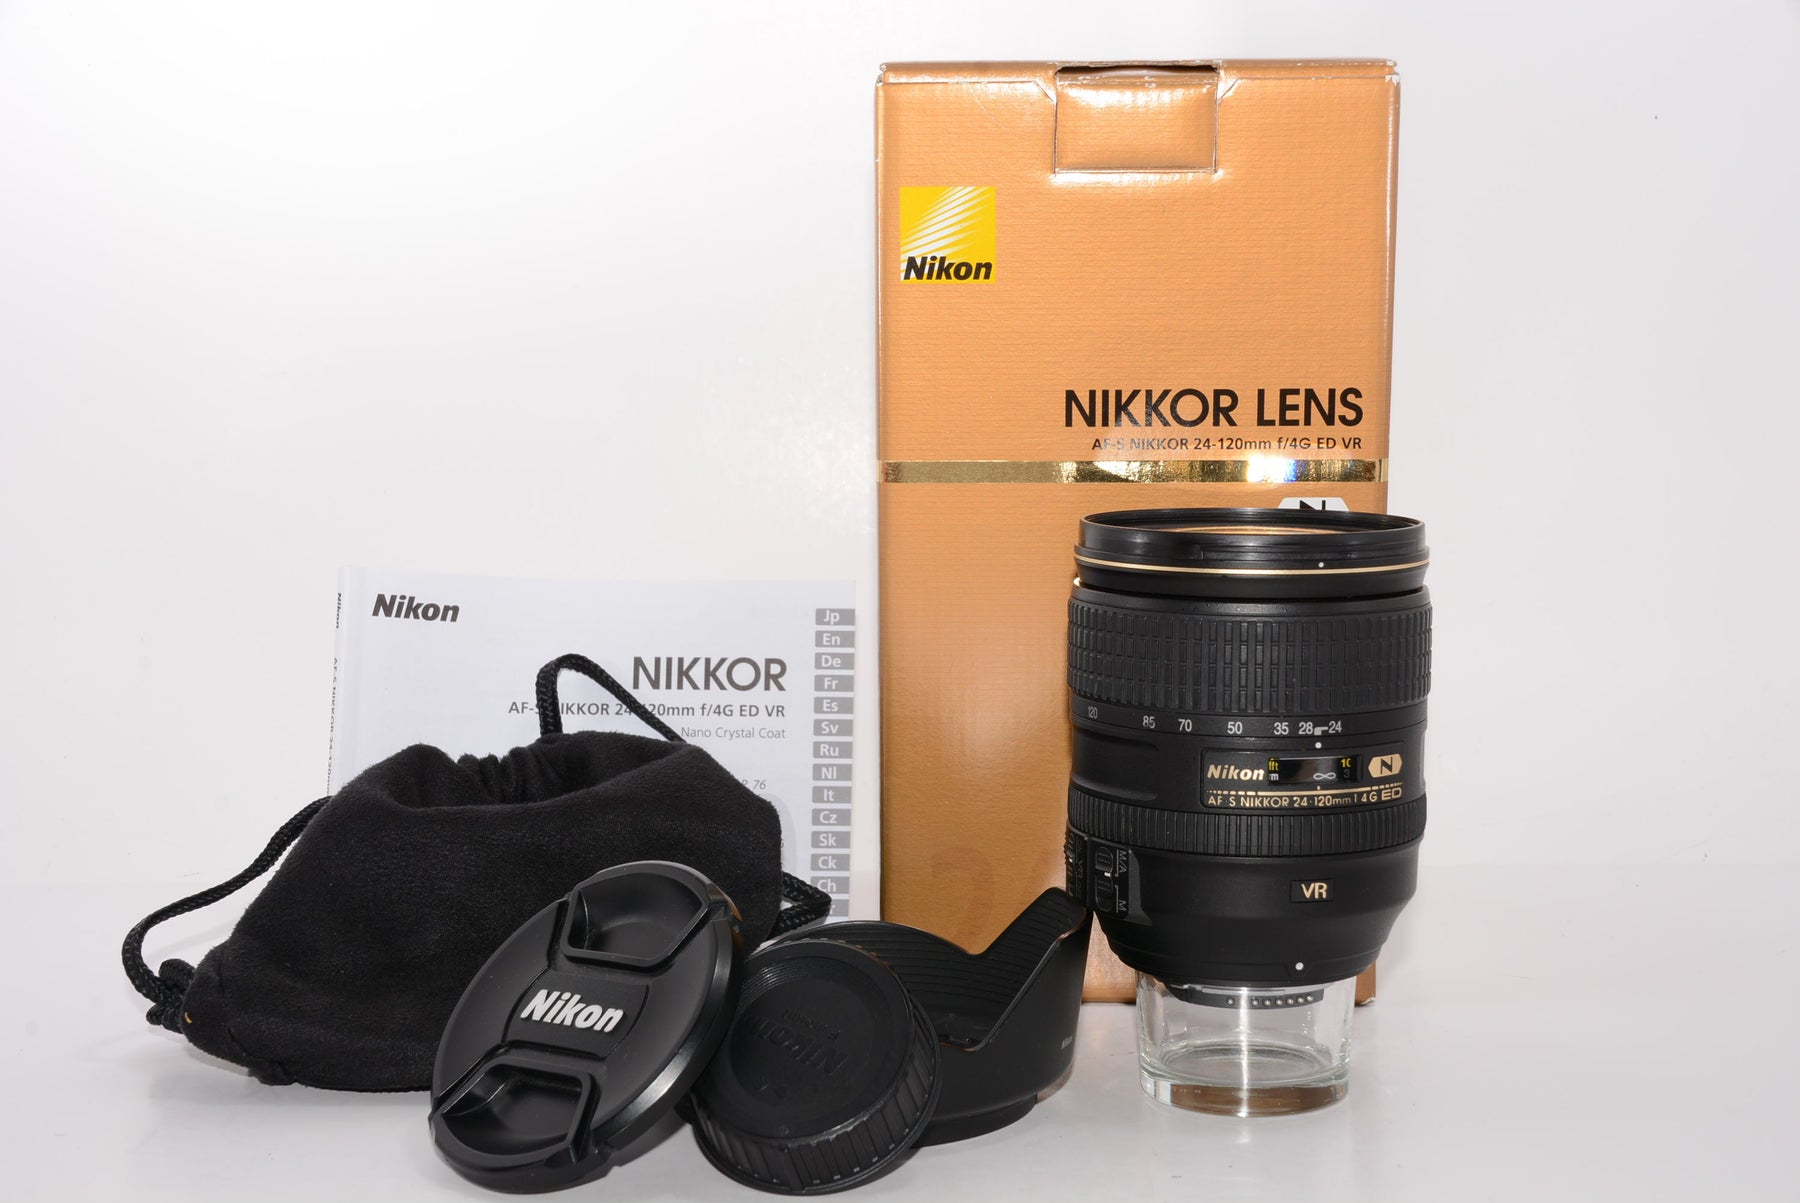 外観特上級】Nikon 標準ズームレンズ AF-S NIKKOR 24-120mm f/4G ED VR